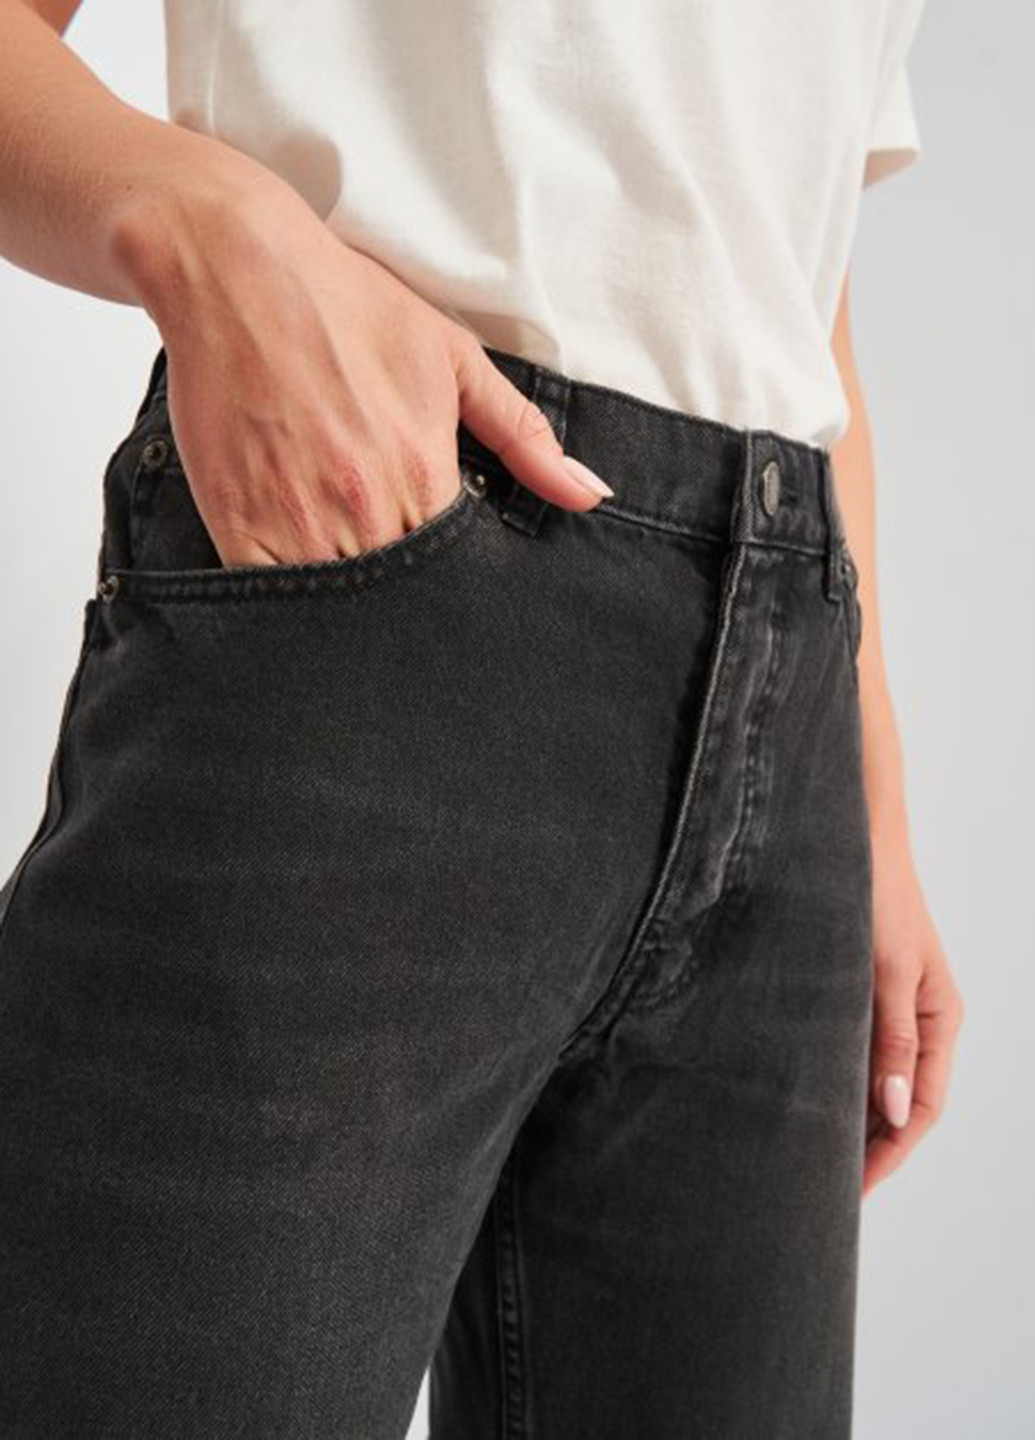 Темно-серые демисезонные кюлоты джинсы Cheap Monday